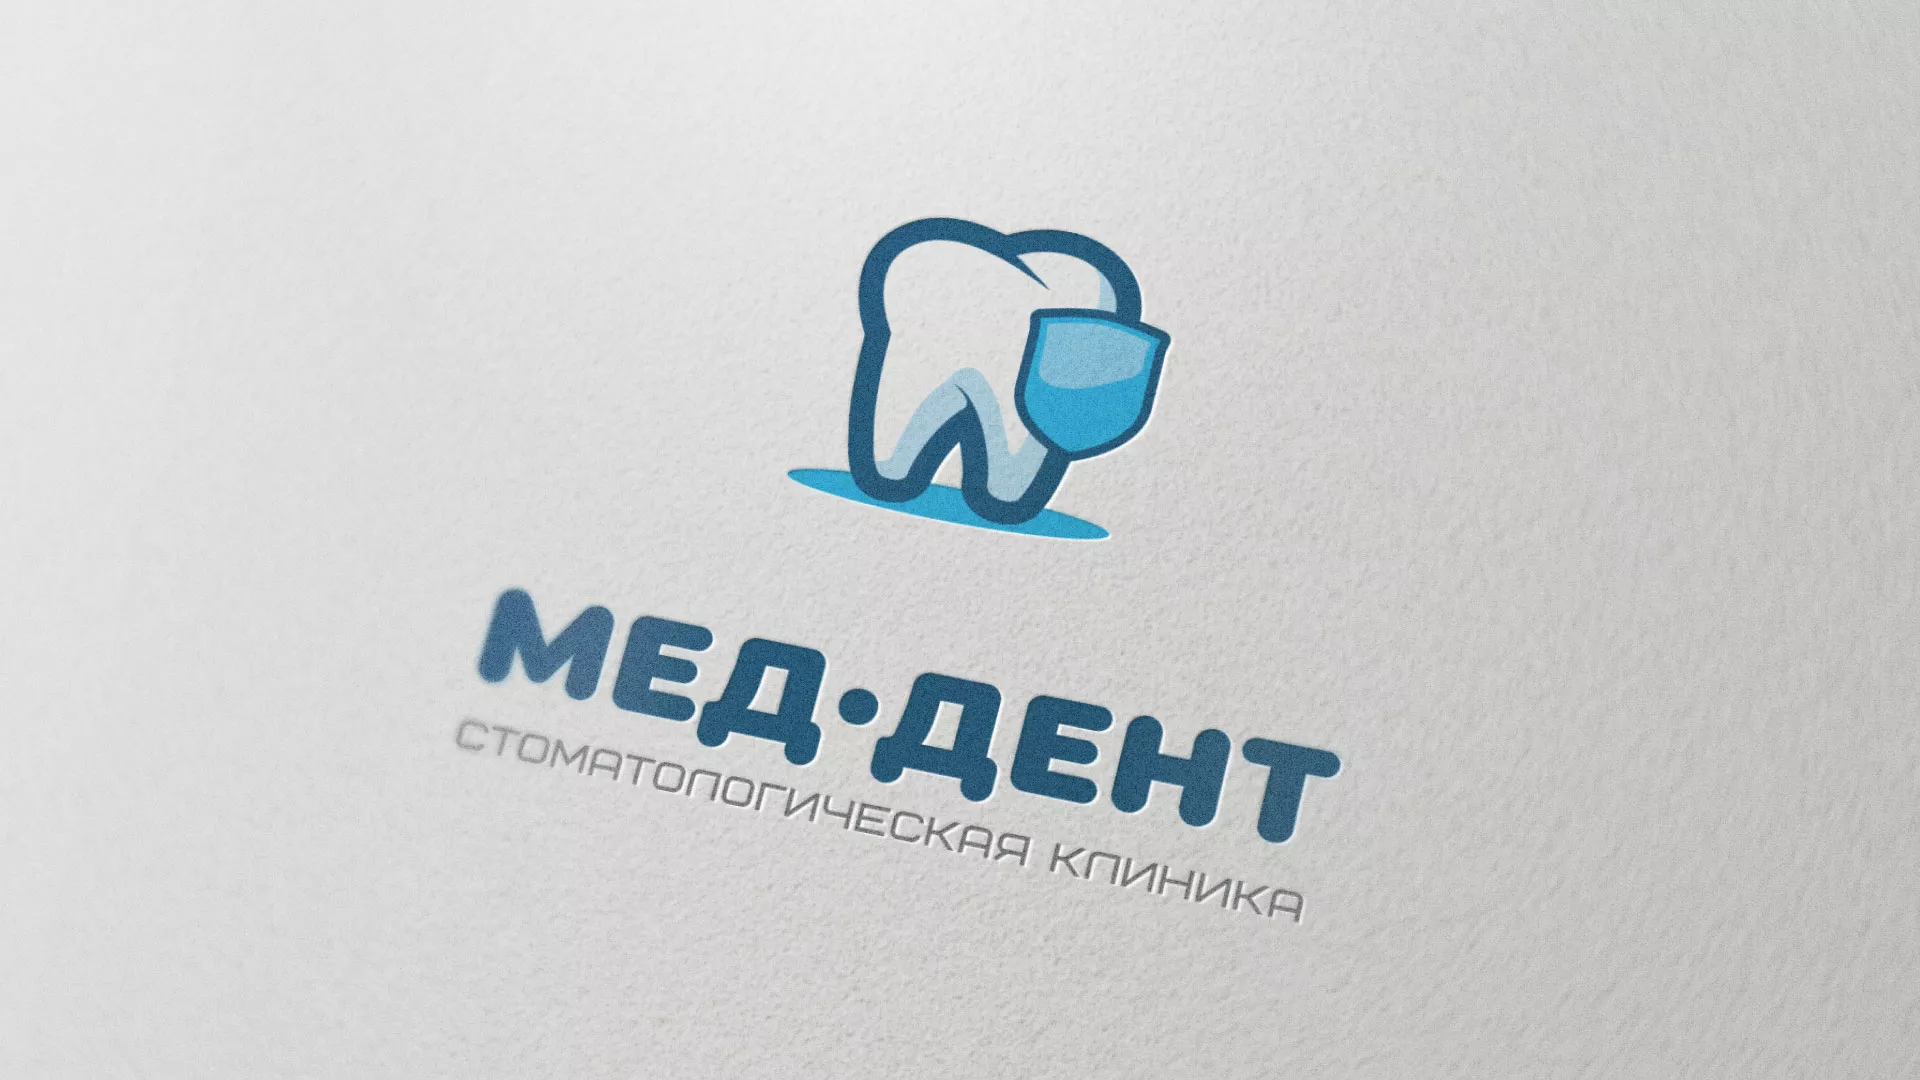 Разработка логотипа стоматологической клиники «МЕД-ДЕНТ» в Ломоносове